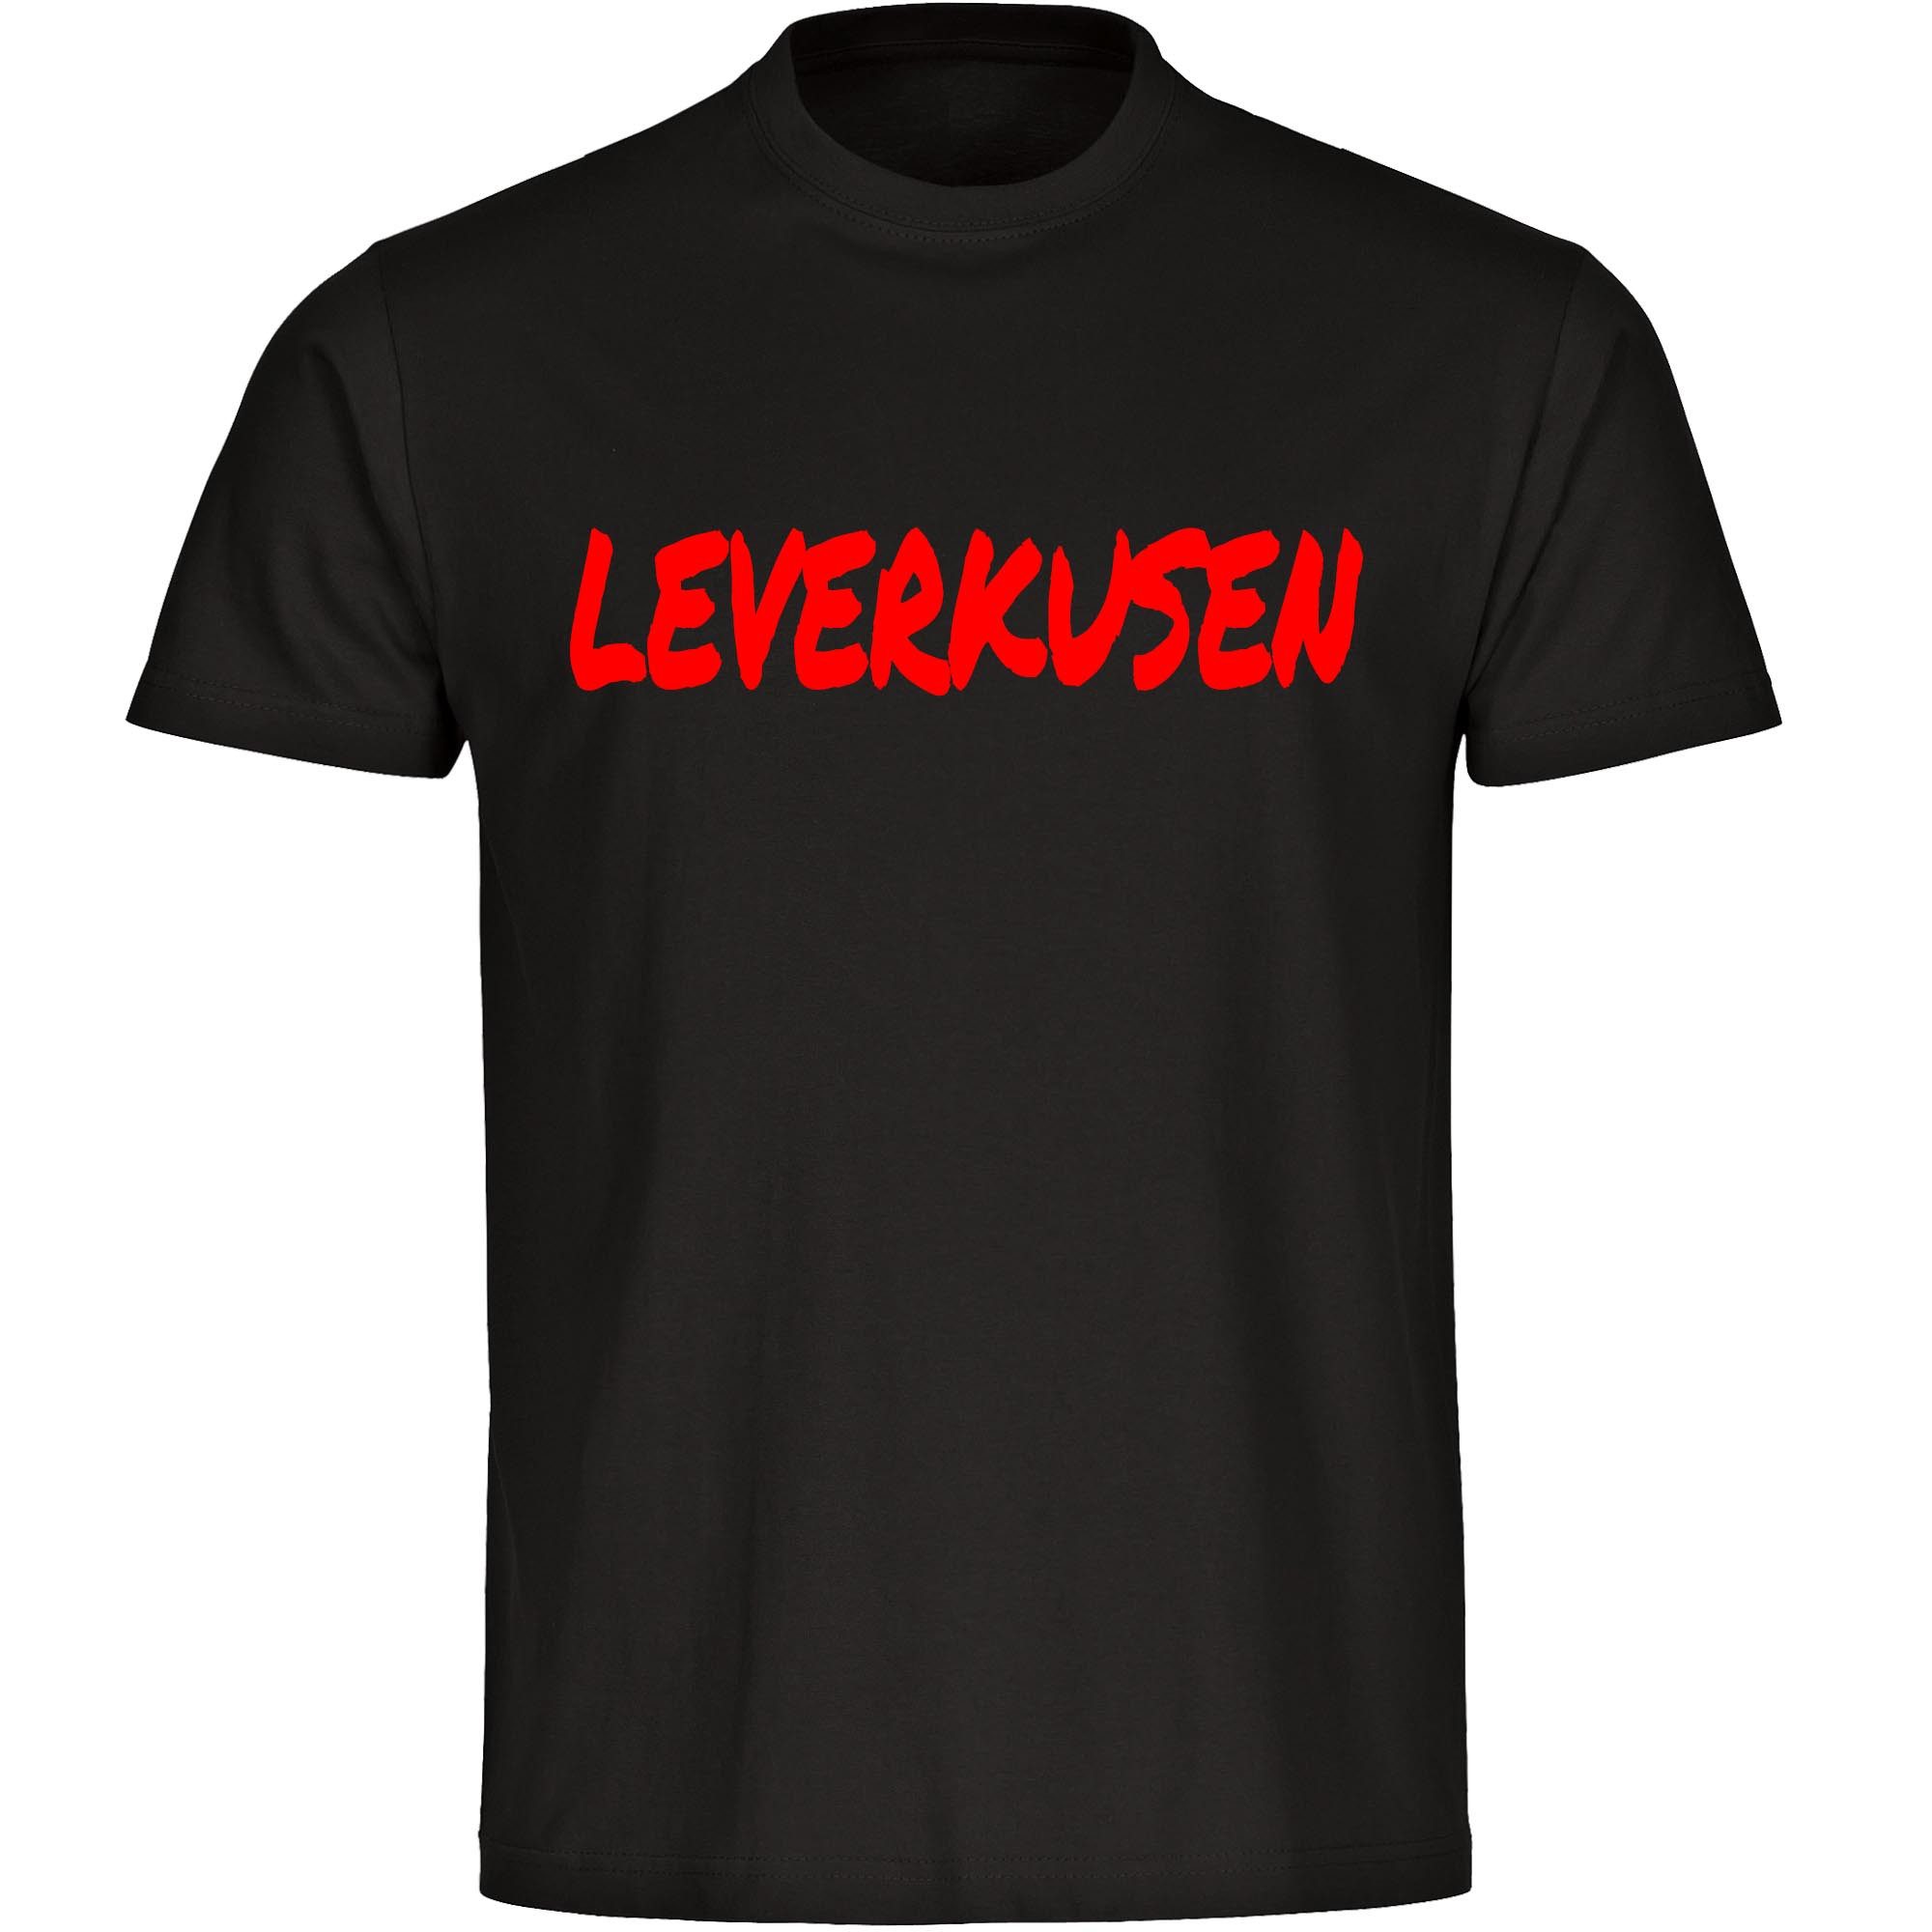 multifanshop T-Shirt Herren Leverkusen - Textmarker - Männer